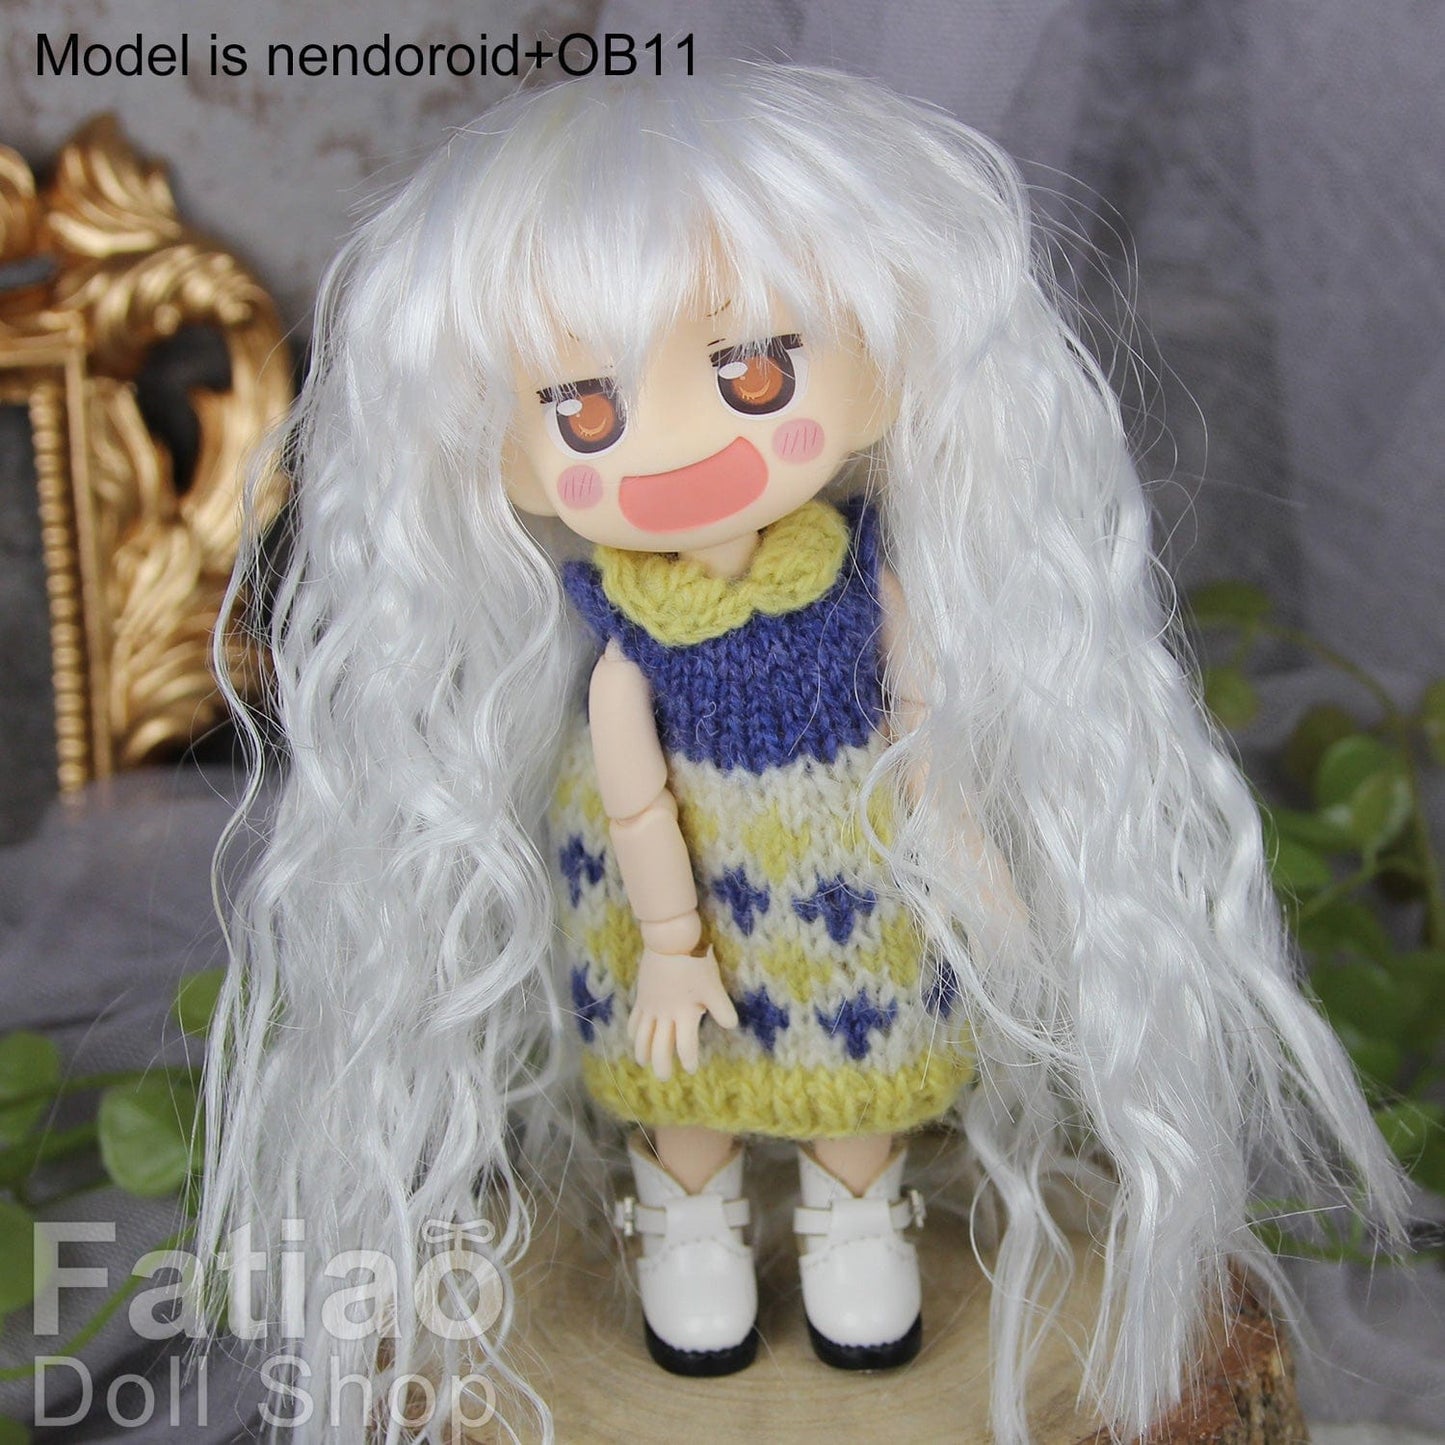 【Fatiao Doll Shop】FWF-041 娃用假髮 多色 / 4-5吋 BJD 8分 12分 iMda1.7